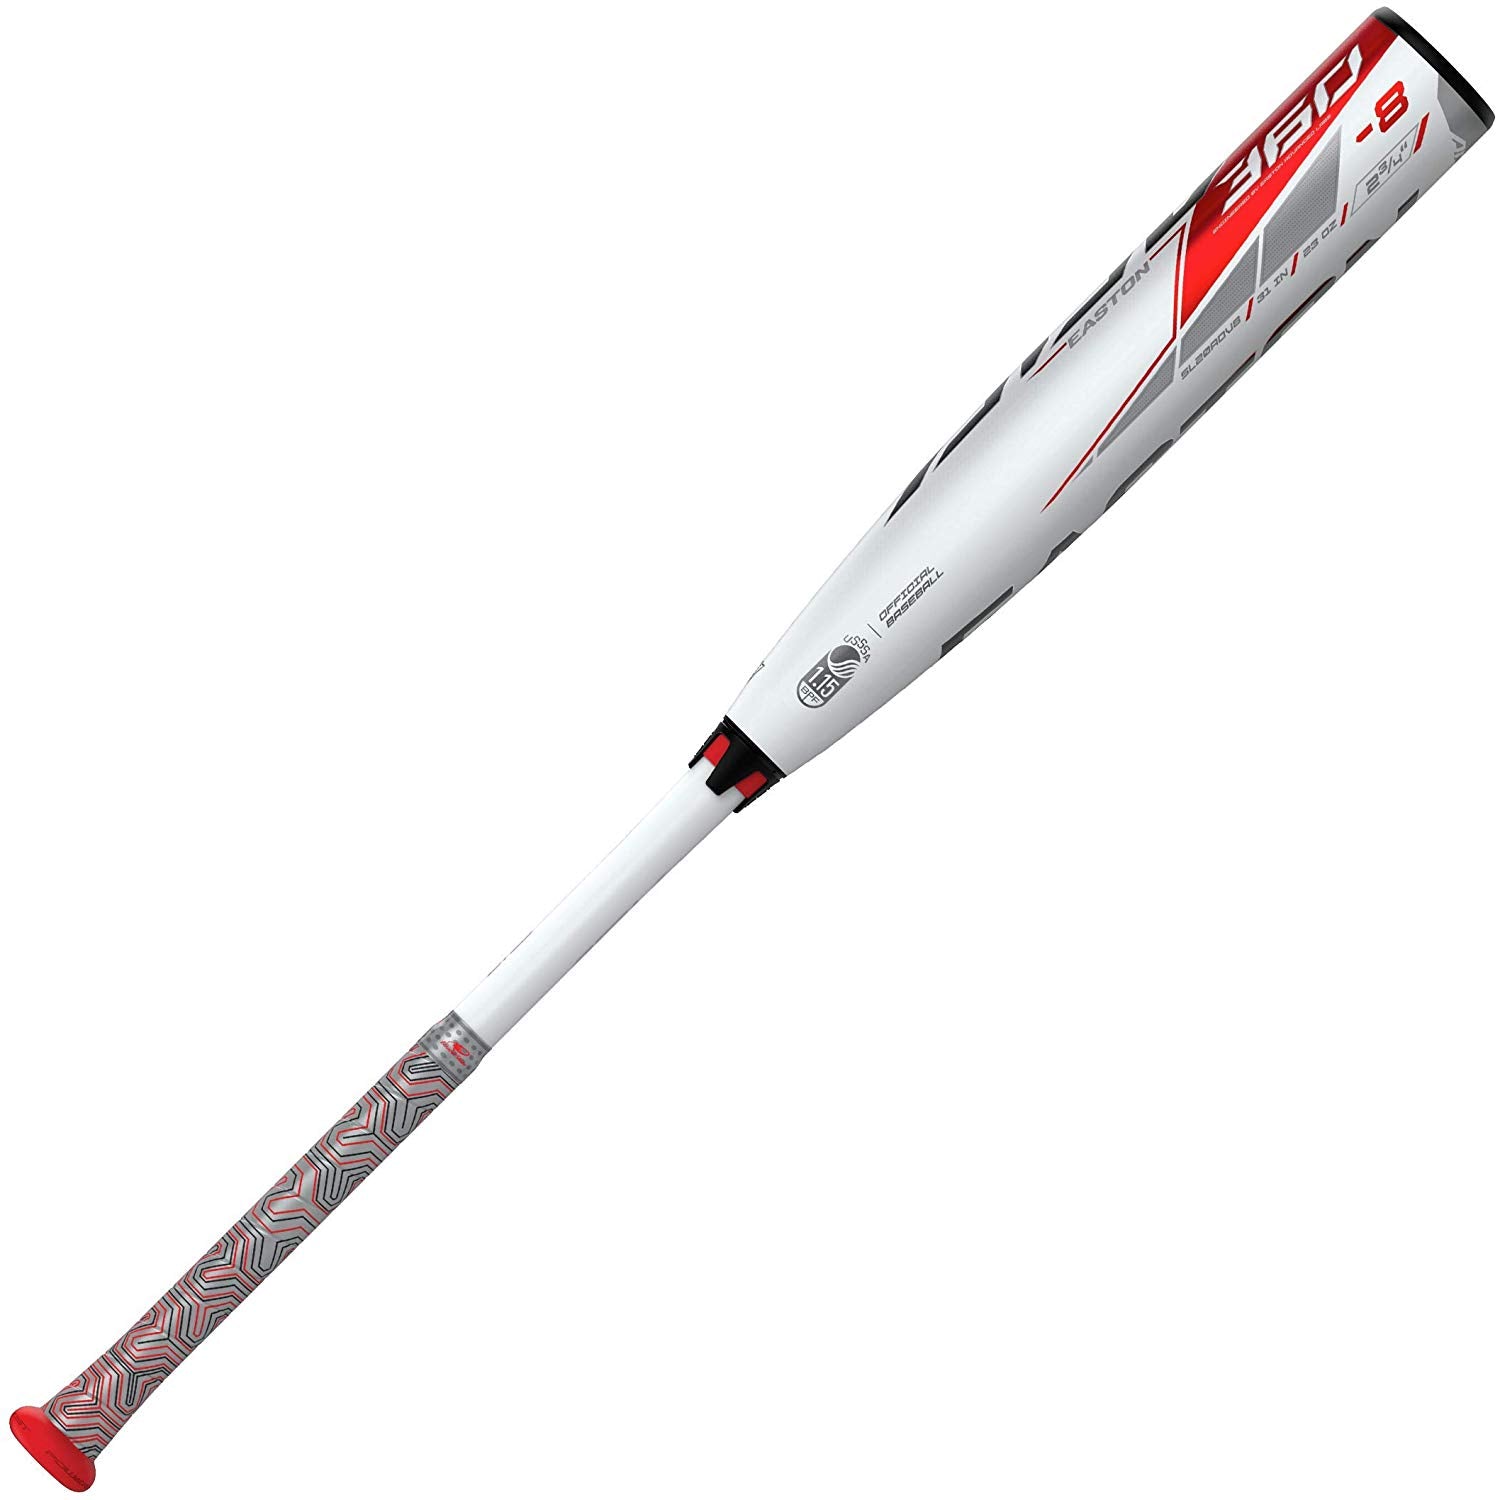 New Easton 2020 SL20ADV8 360 Advance Senior League Baseball Bat